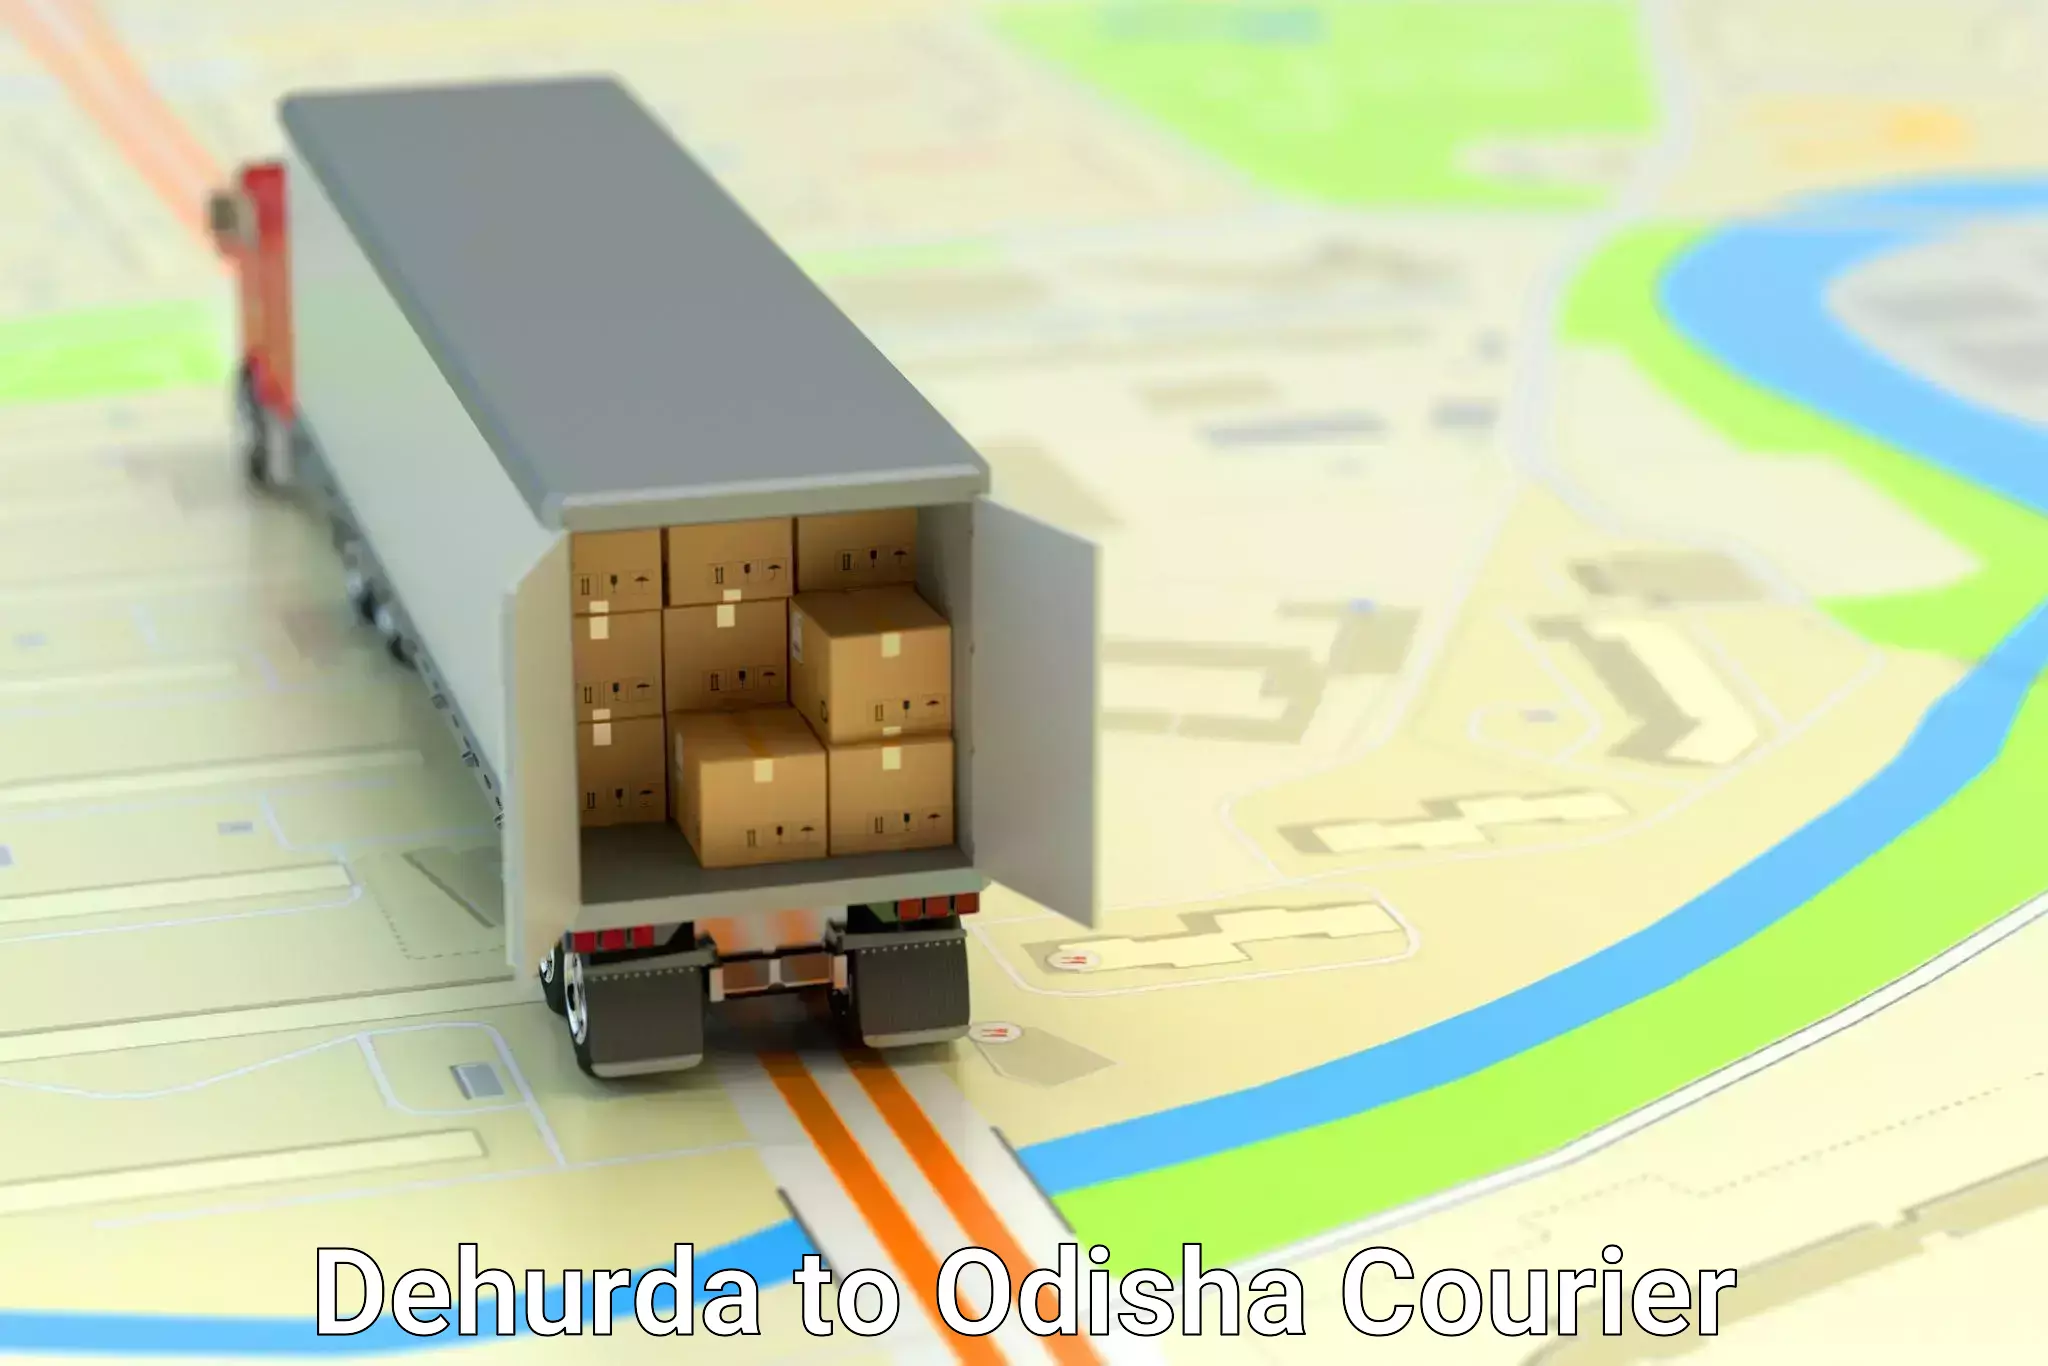 Logistics service provider Dehurda to Odisha